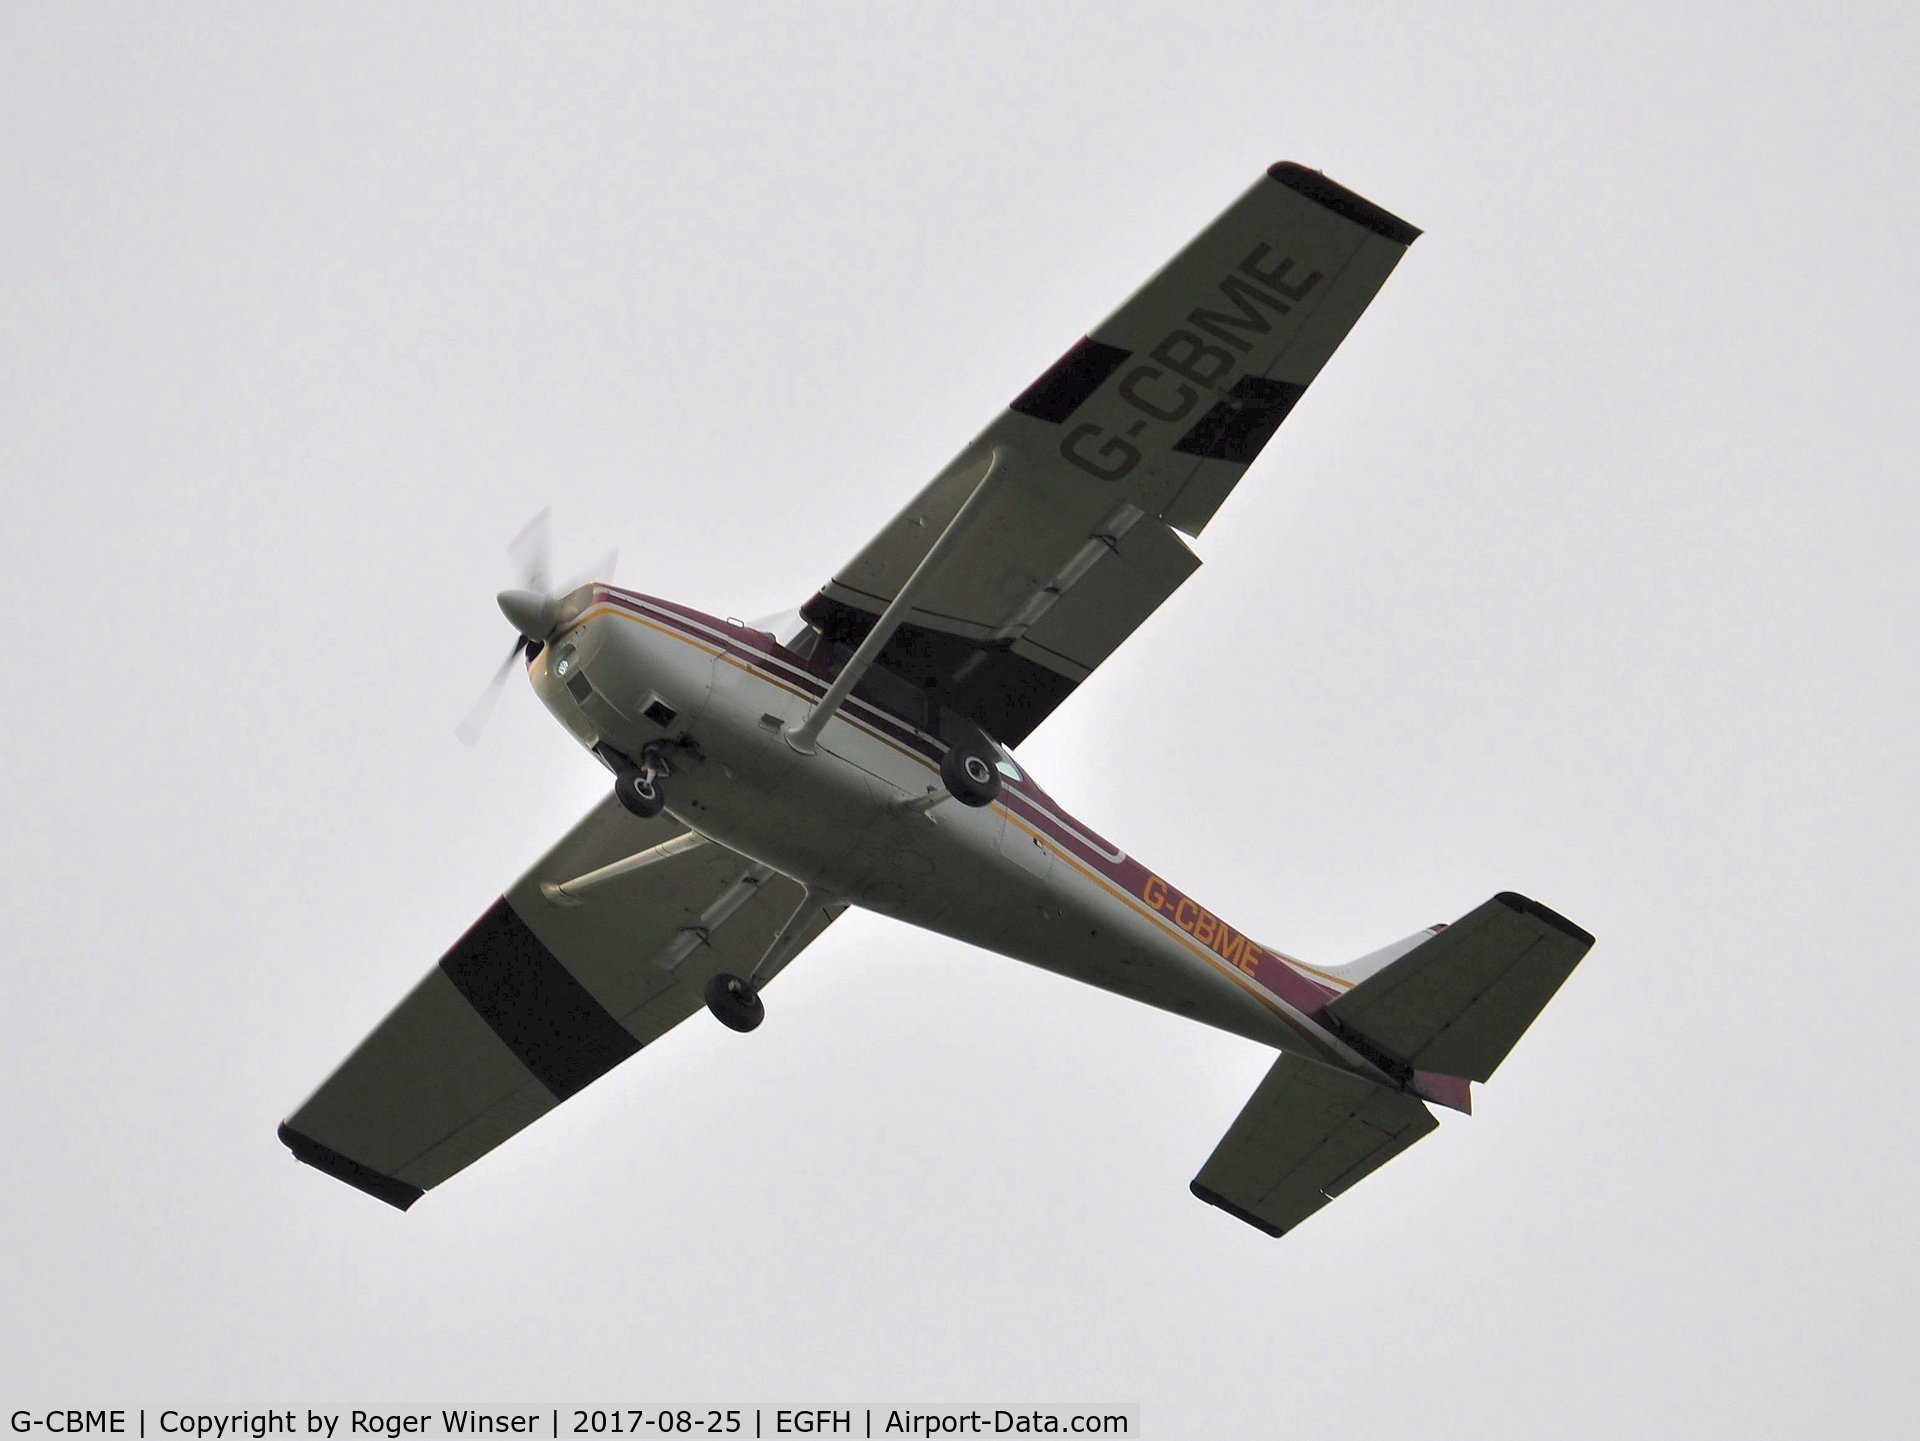 G-CBME, 1973 Reims F172M Skyhawk Skyhawk C/N 1060, Finals to land Runway 22.